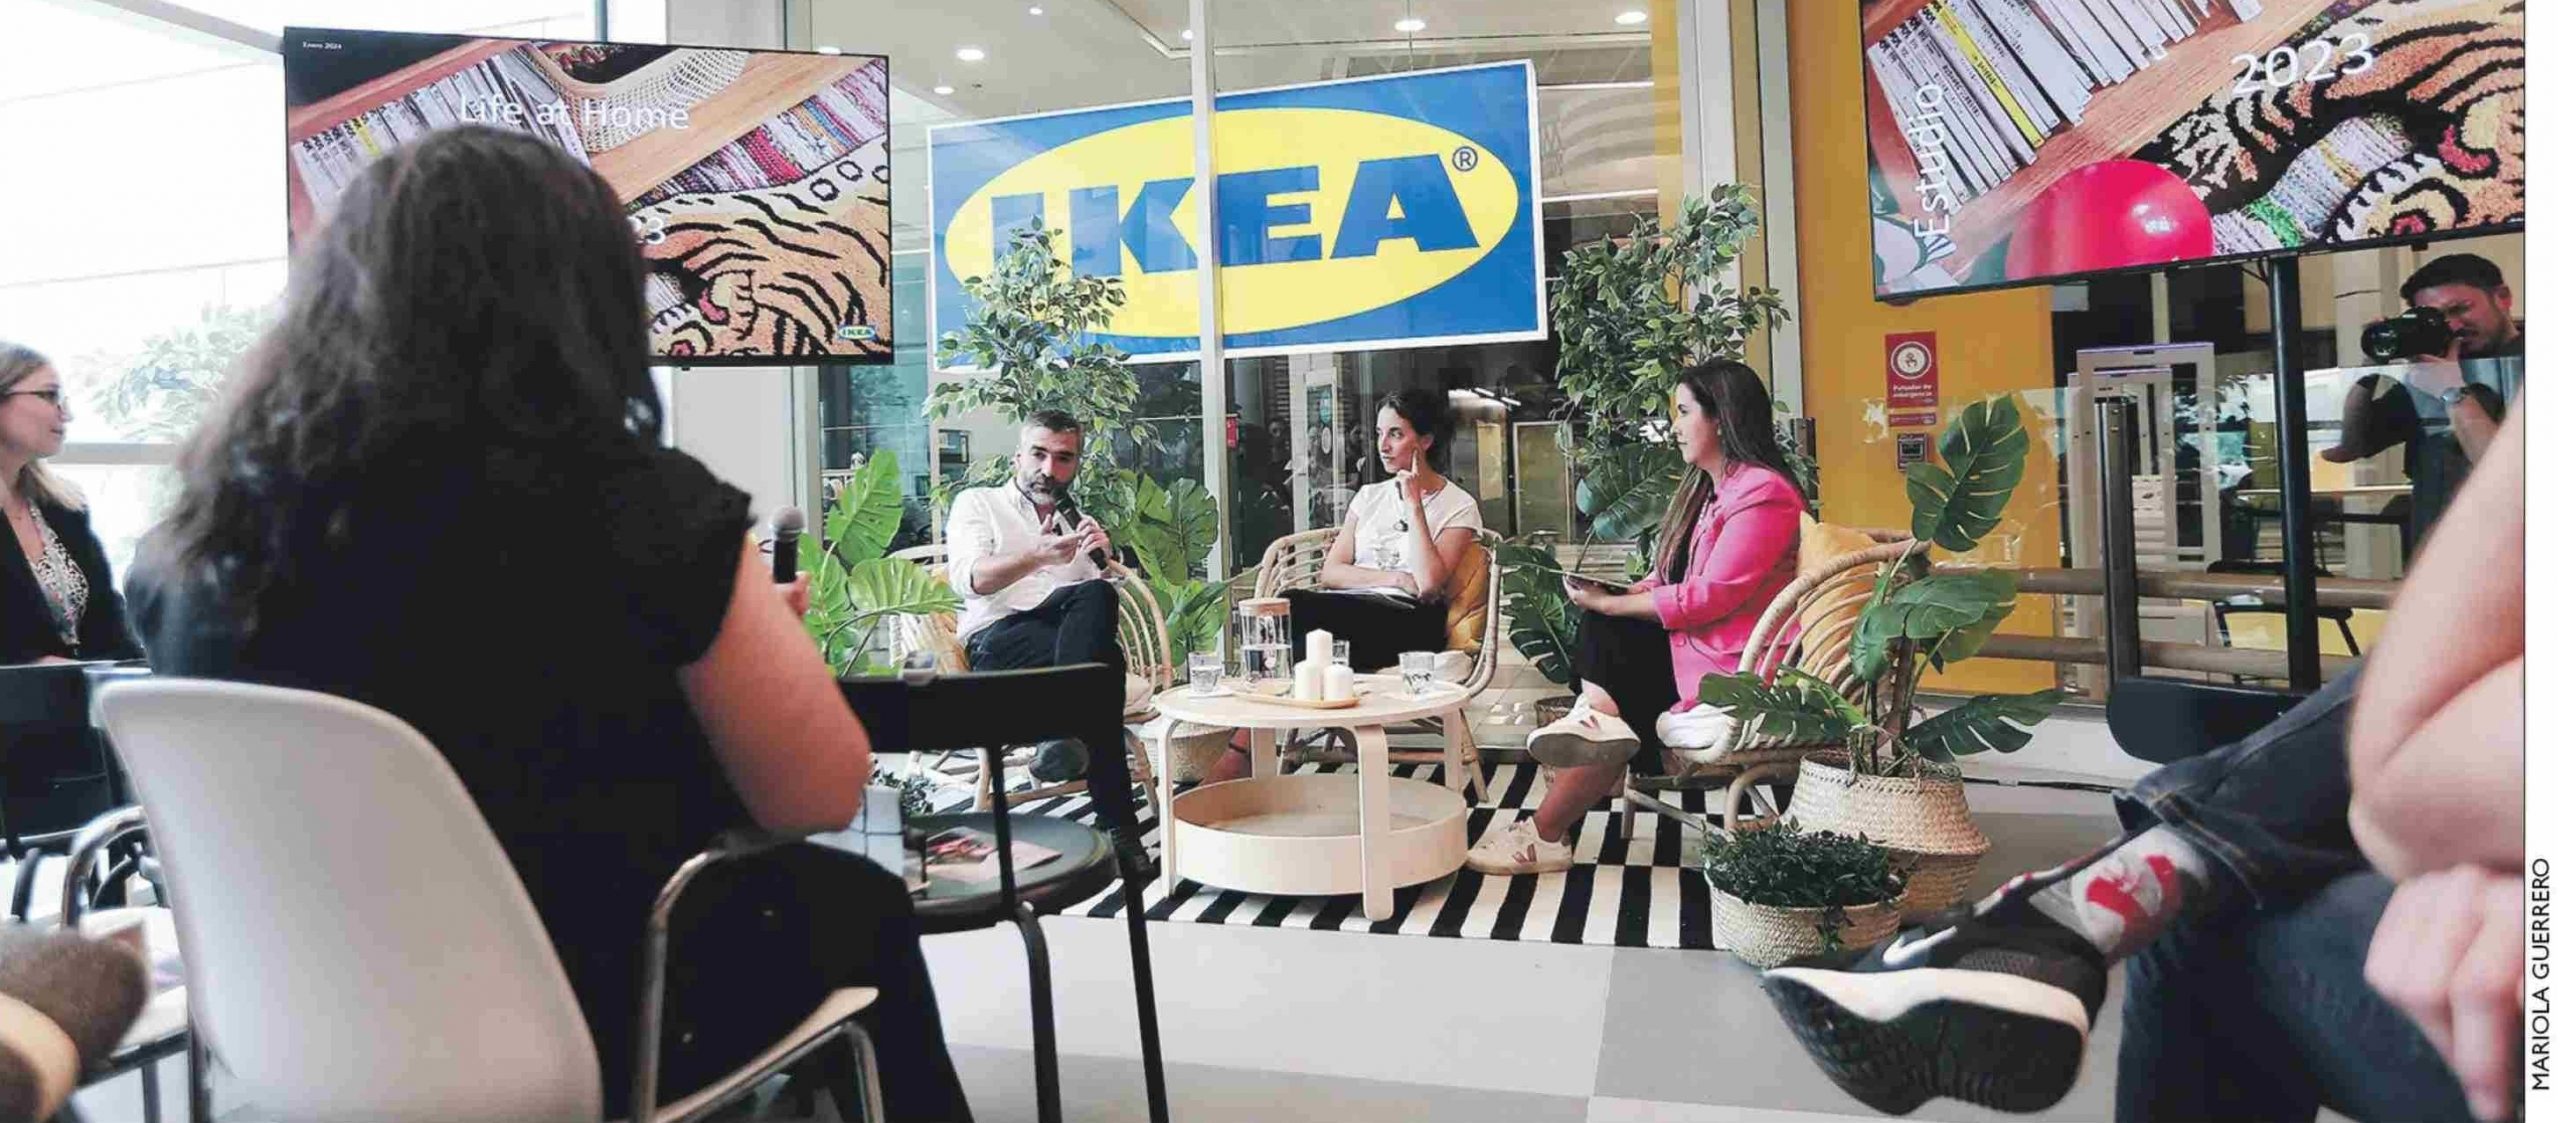 Encuesta de IKEA explora los hábitos de las y los chilenos, comenta Felipe Link